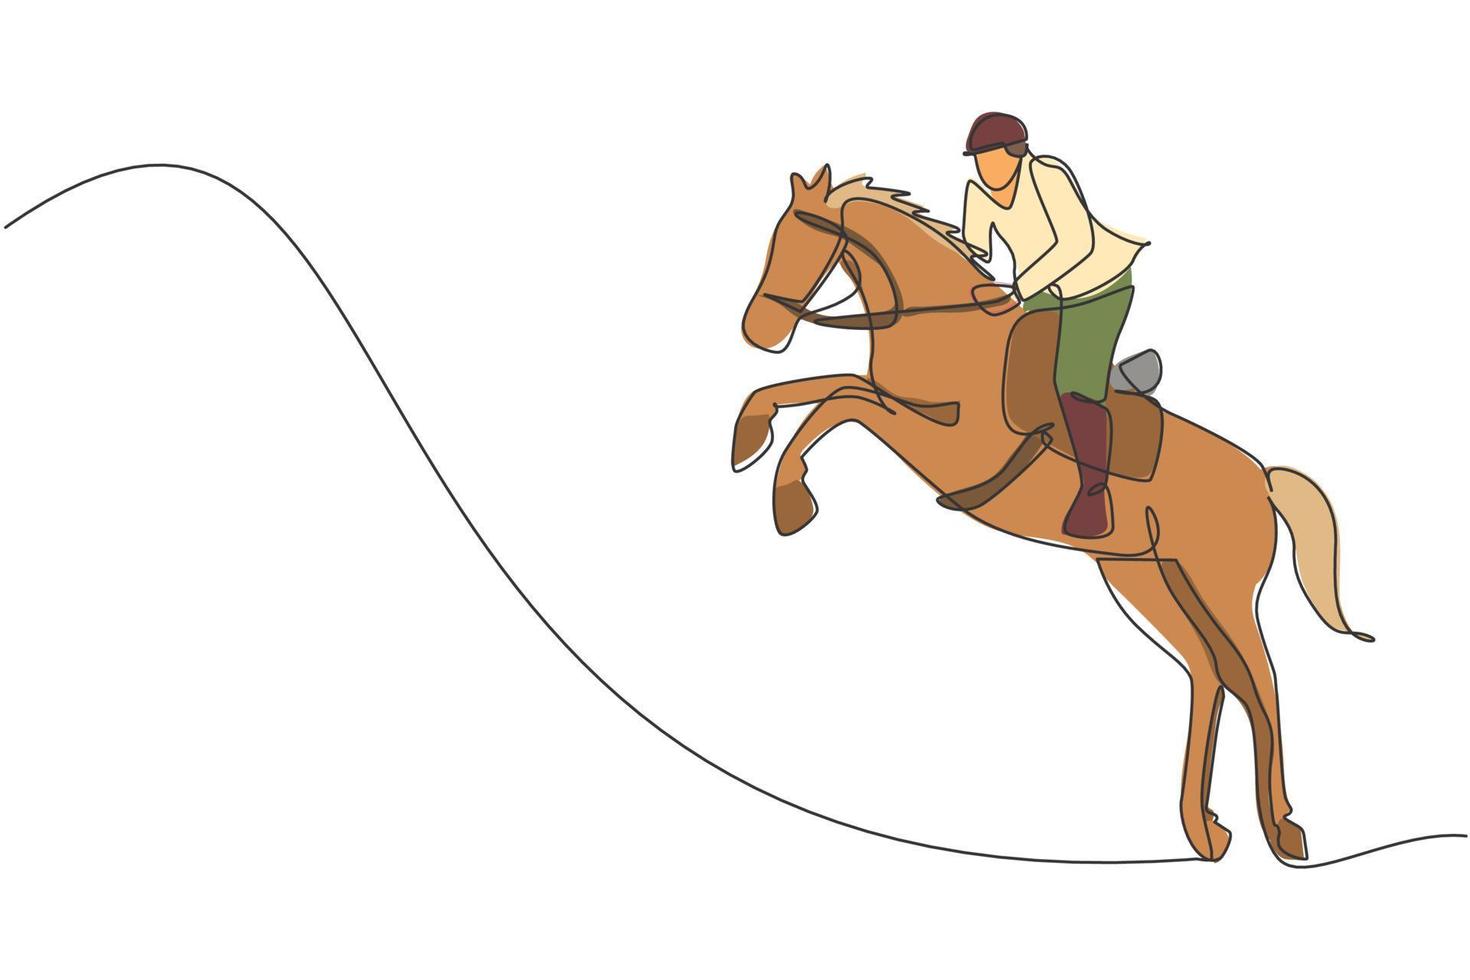 een doorlopende lijntekening jonge ruiter man in actie springen. paarden training op racebaan. paardensport competitie concept. dynamische enkele lijn tekenen ontwerp vector illustratie afbeelding